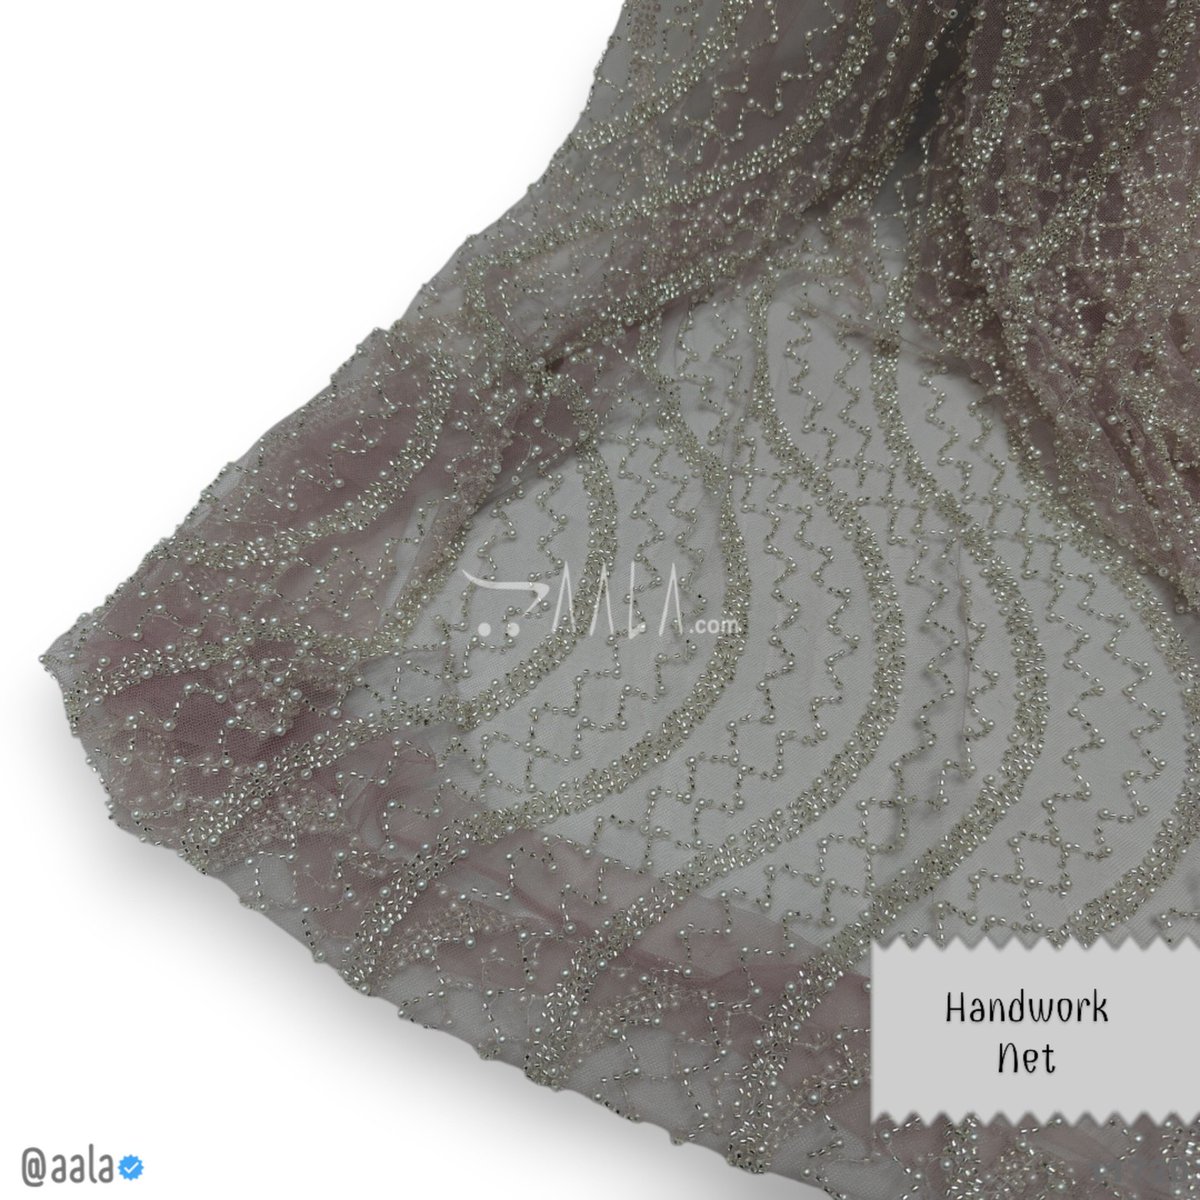 Handwork Fabrics at aala.com #aala #onlinefabrics #fashionfabrics #fashiondesigners #handwork #dyeable #net #dupattastyle #loveaala #aala.com #fashionbloggers Buy Online at aala.com/p/11720